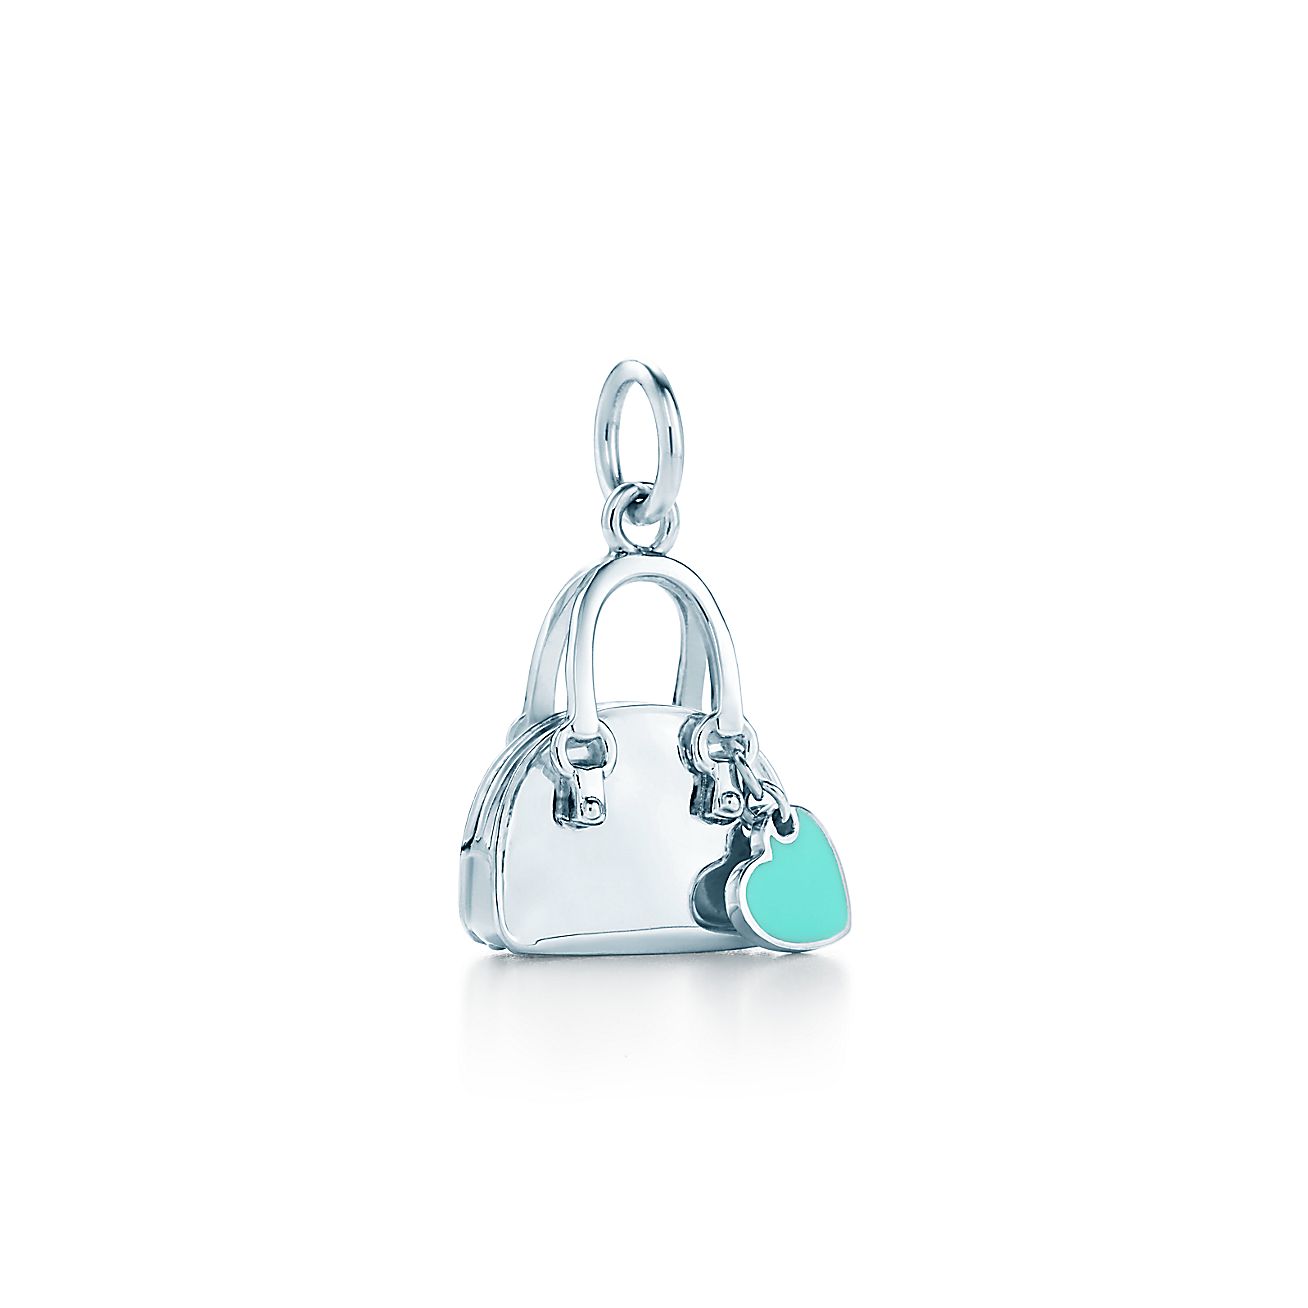 Handbag charm with Tiffany Blue enamel finish in sterling silver. | Tiffany & Co.